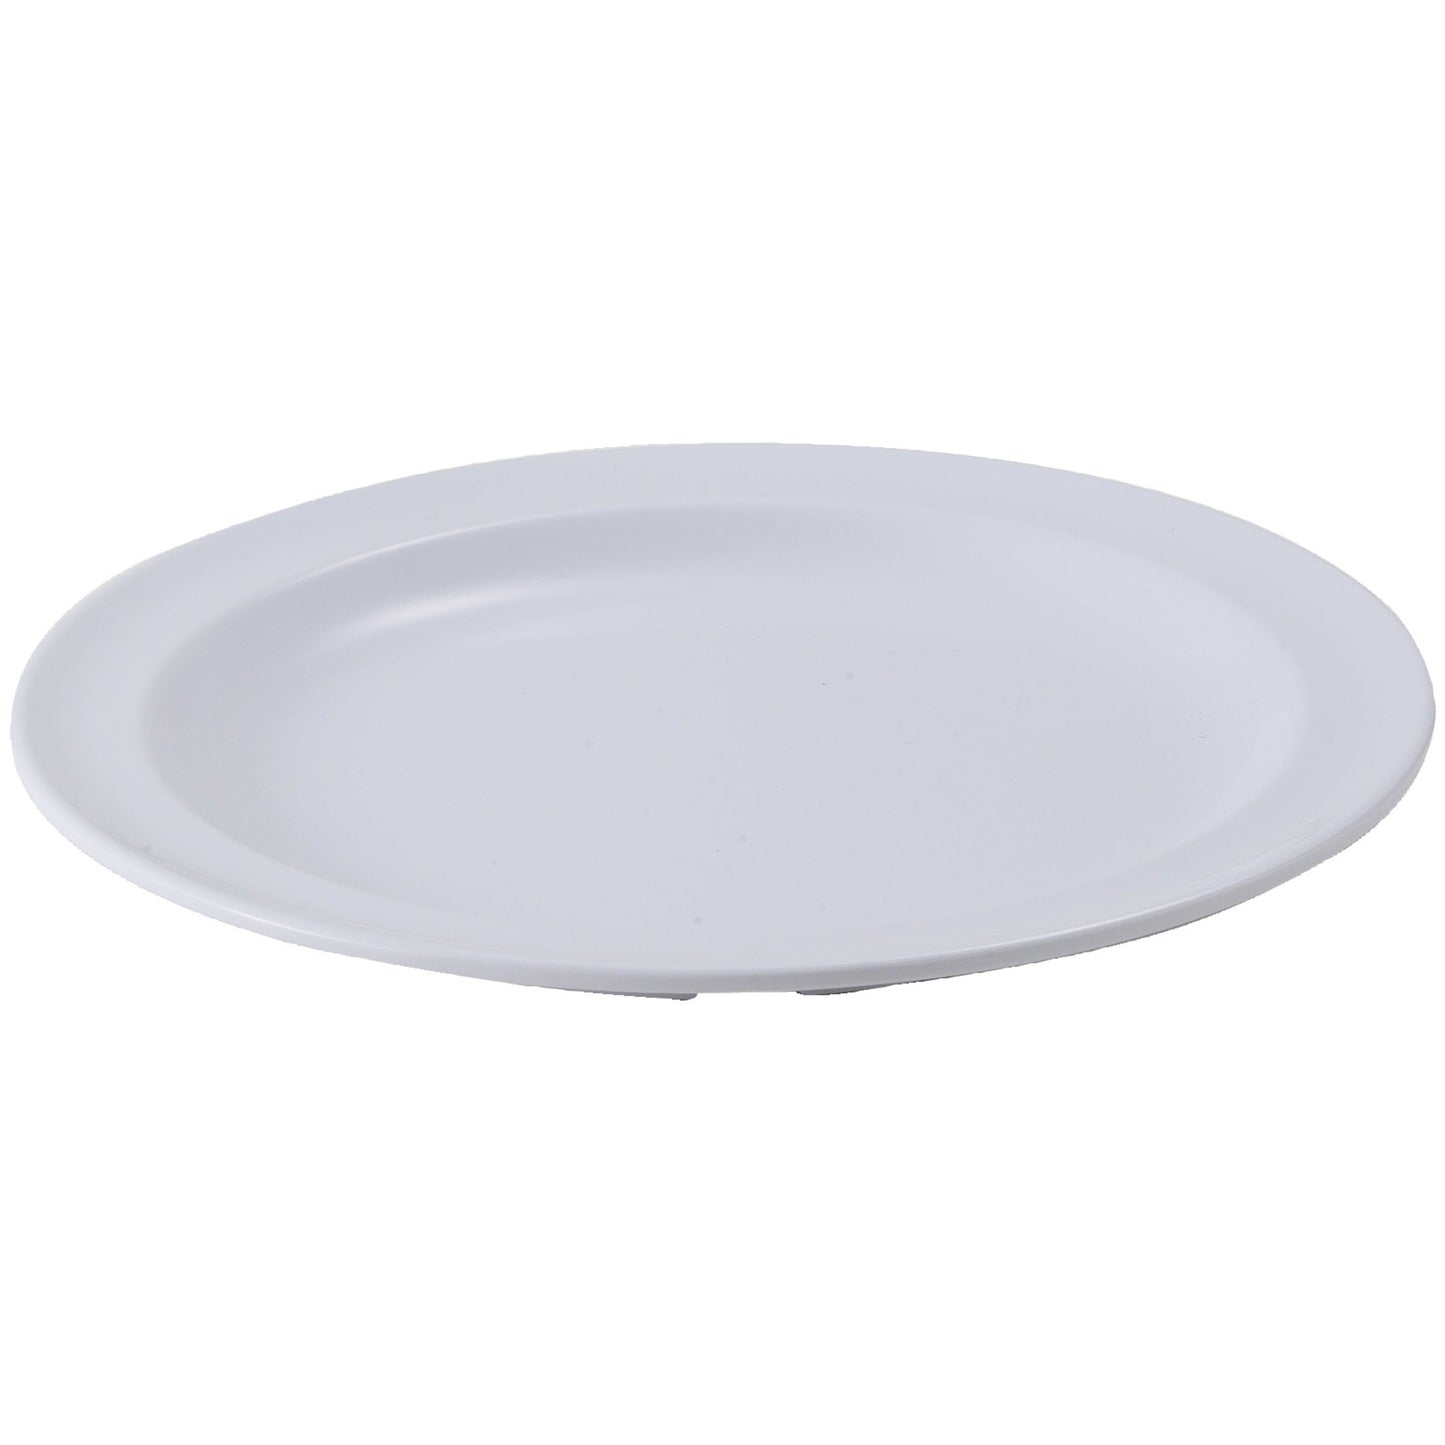 MMPR-9W - Melamine 9" Round Plates - White